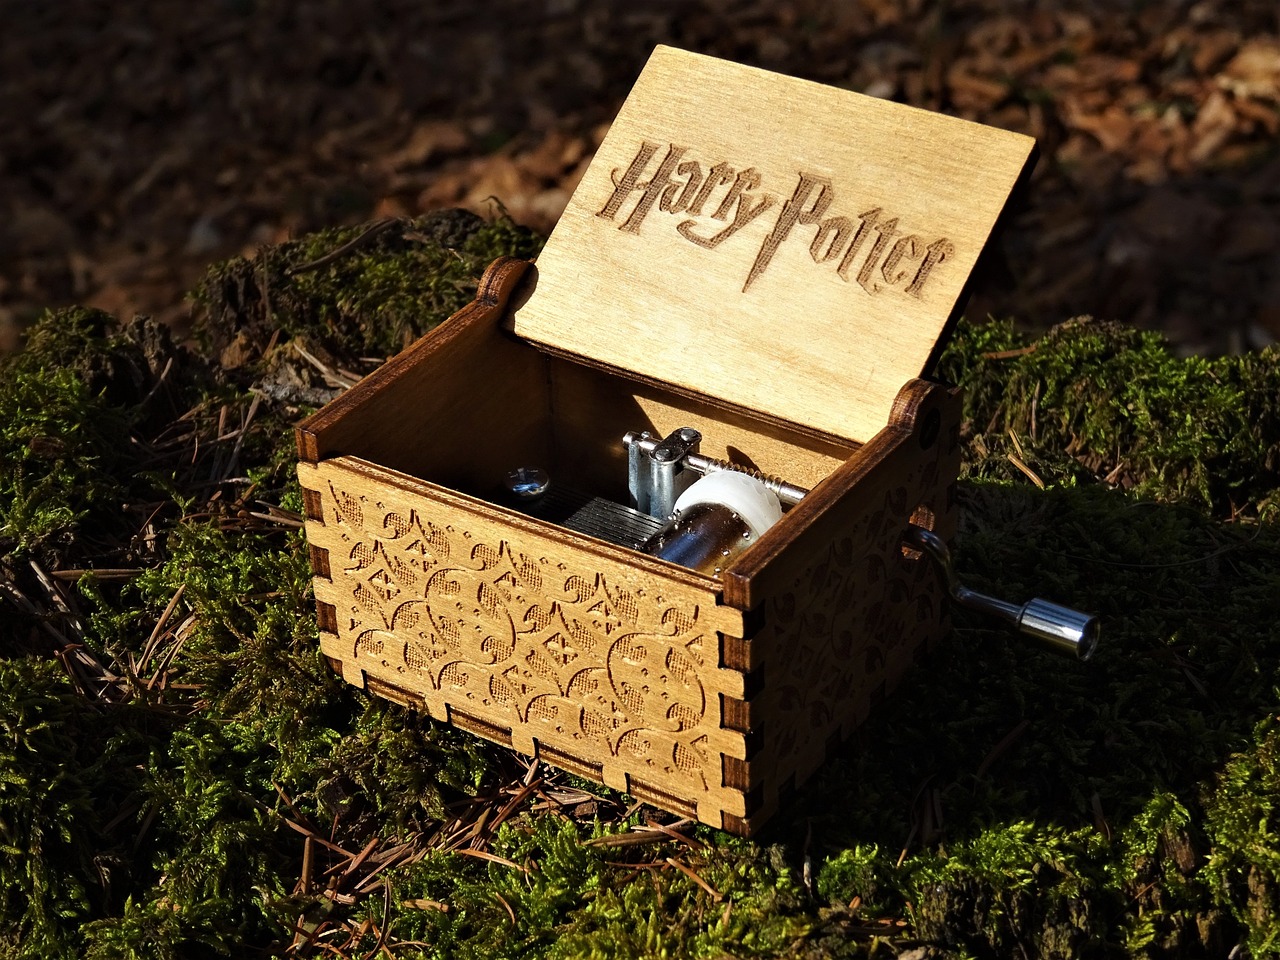 Série da HBO sobre Harry Potter deve estrear em 2026 - Imagem de Aline Berry por Pixabay 